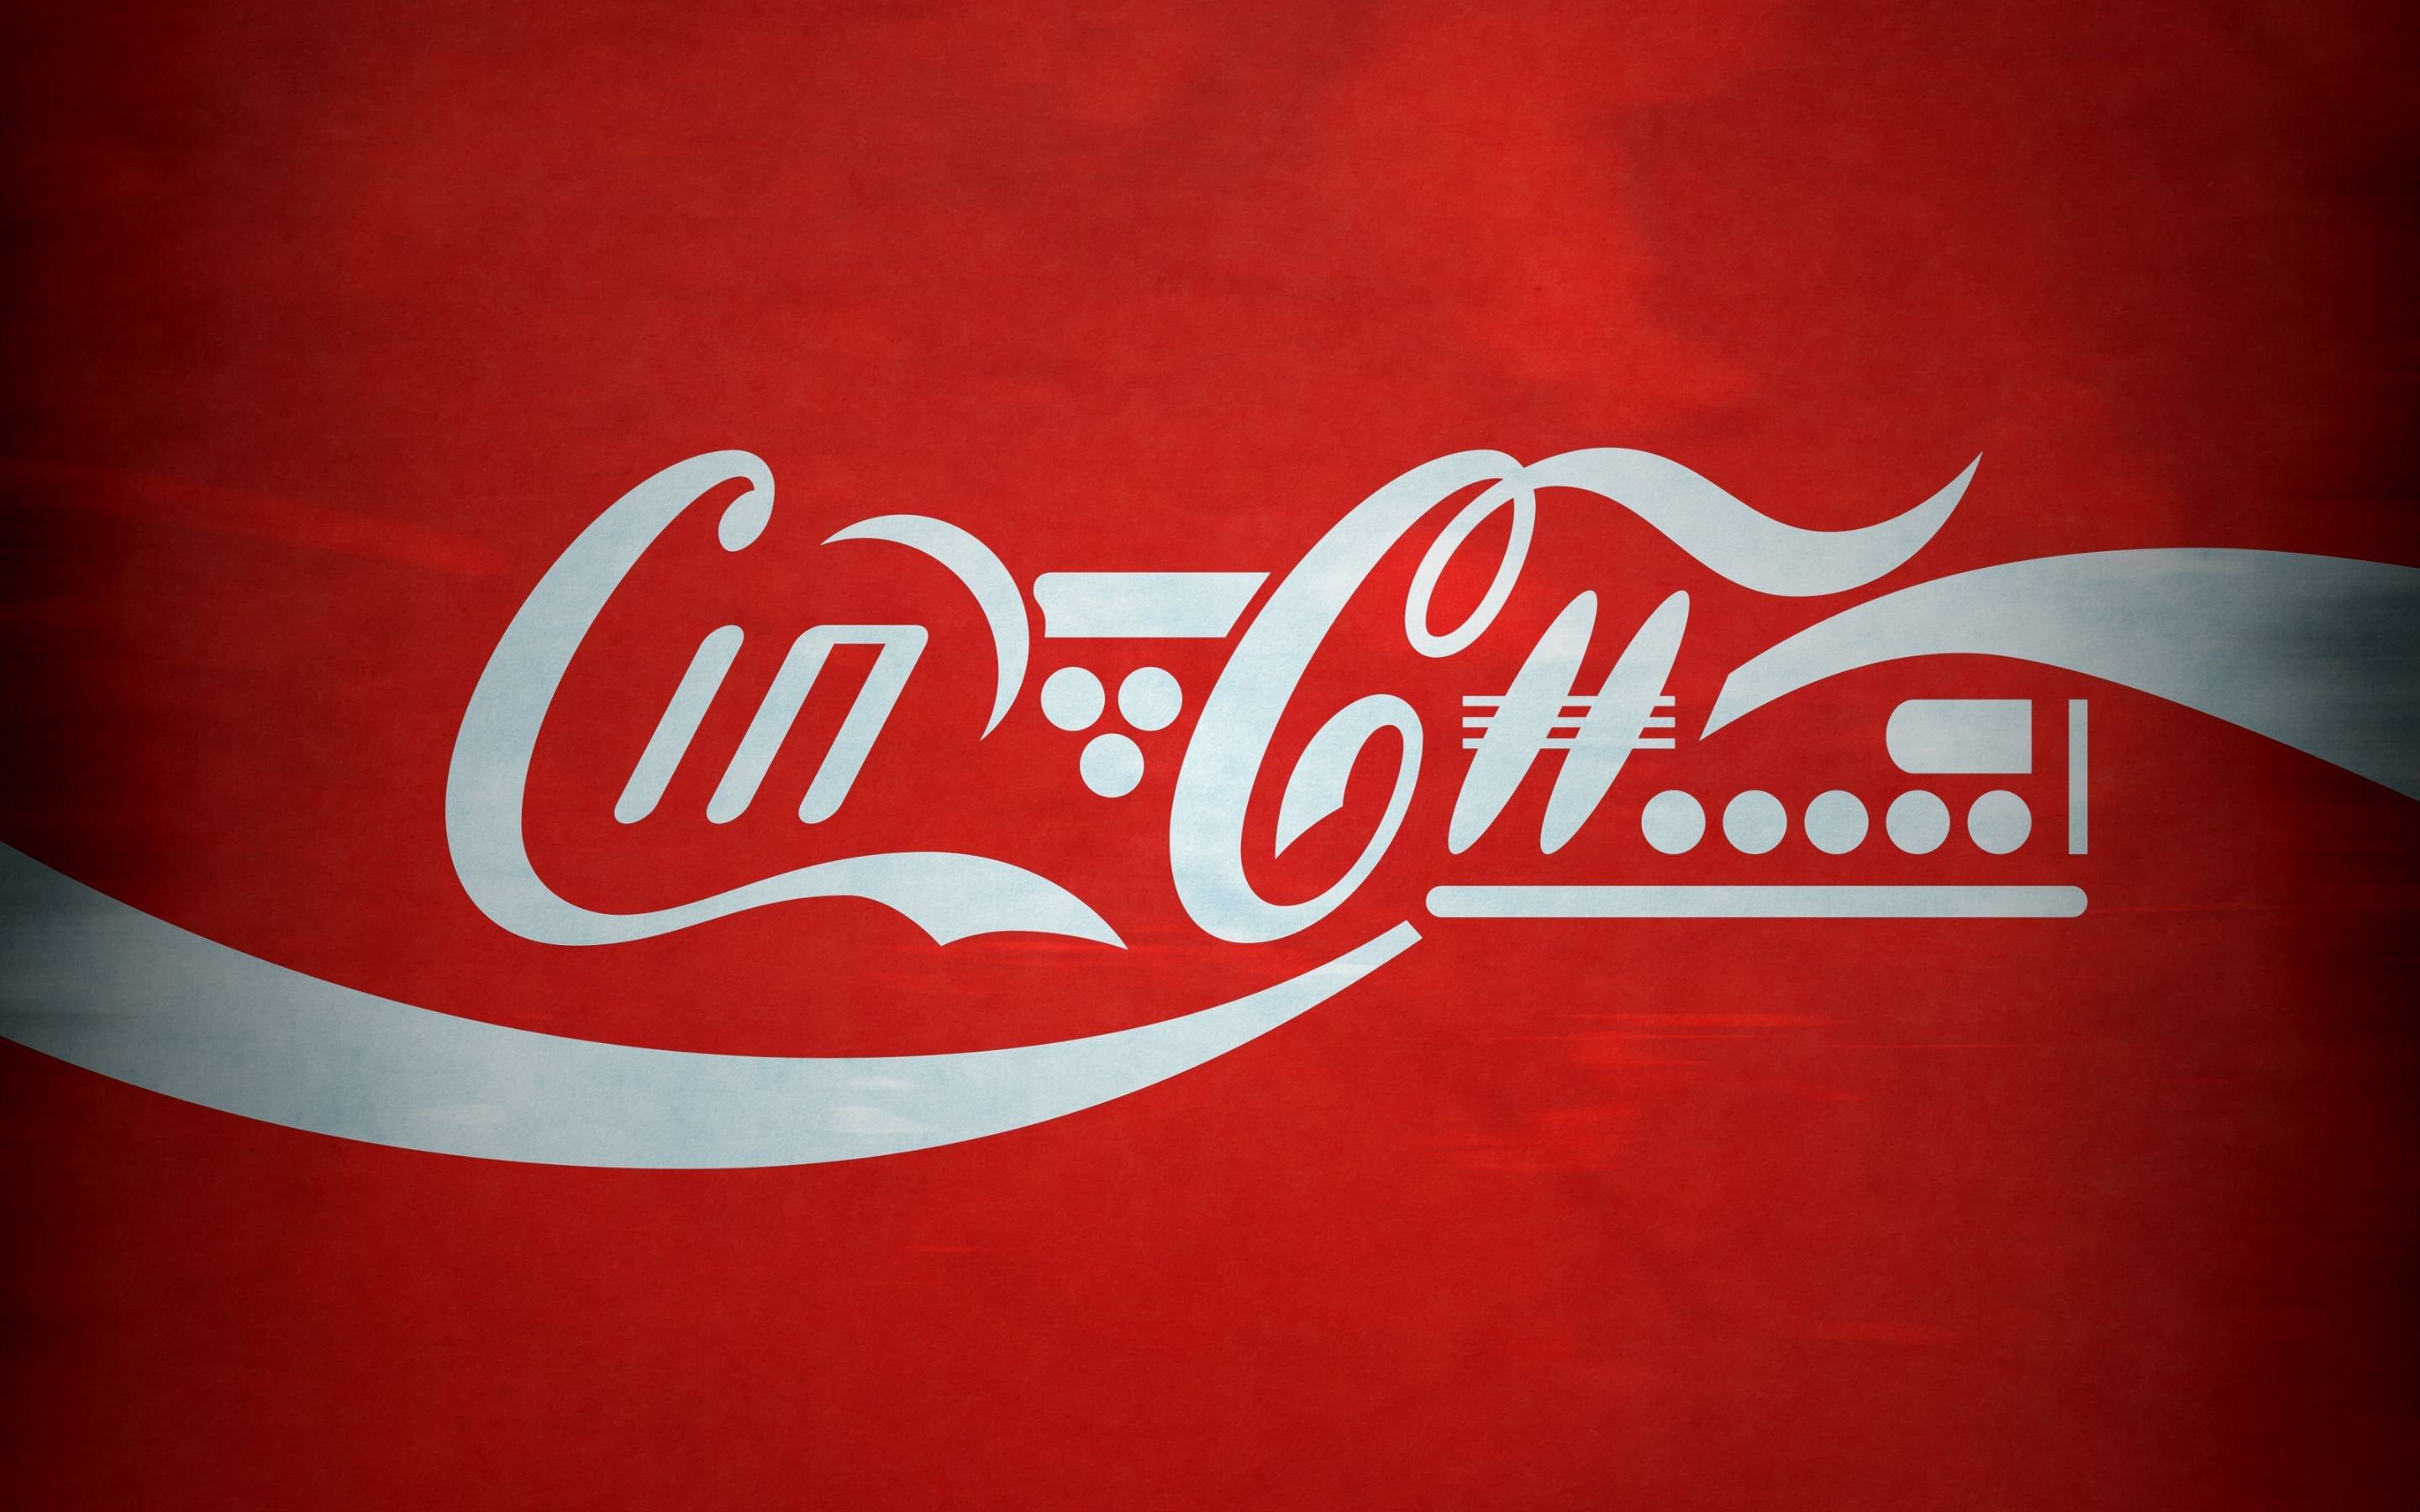 The Coca Cola Logo Of The Future [3200x2000]